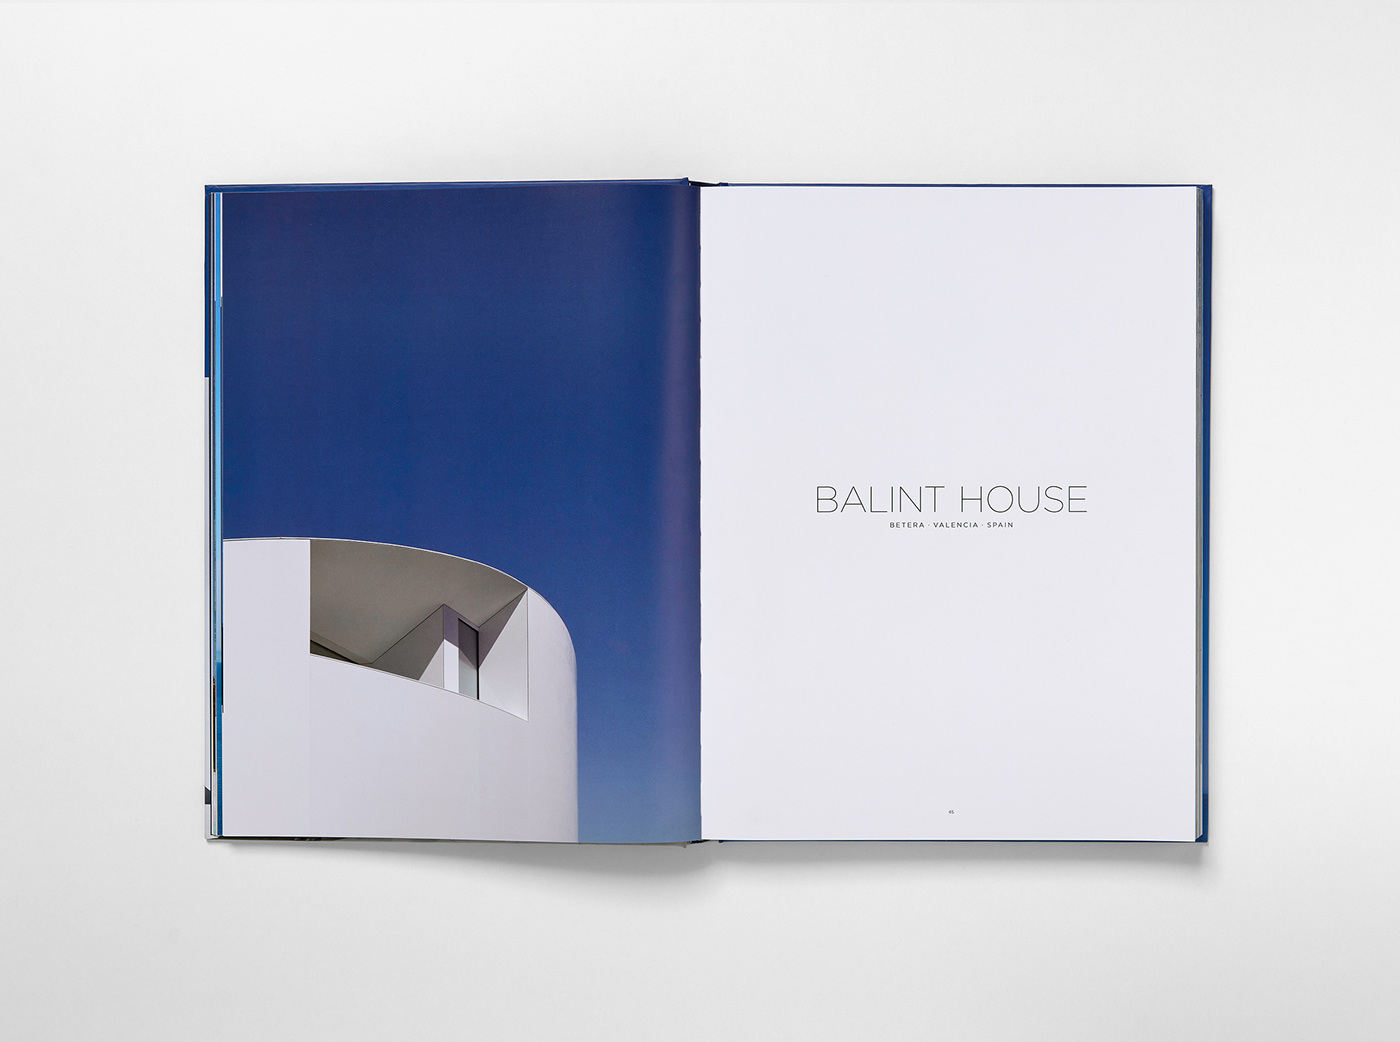 architecture book graphic design  minimal catalog design Architecture Photography architecture design editorial design  Fran Silvestre